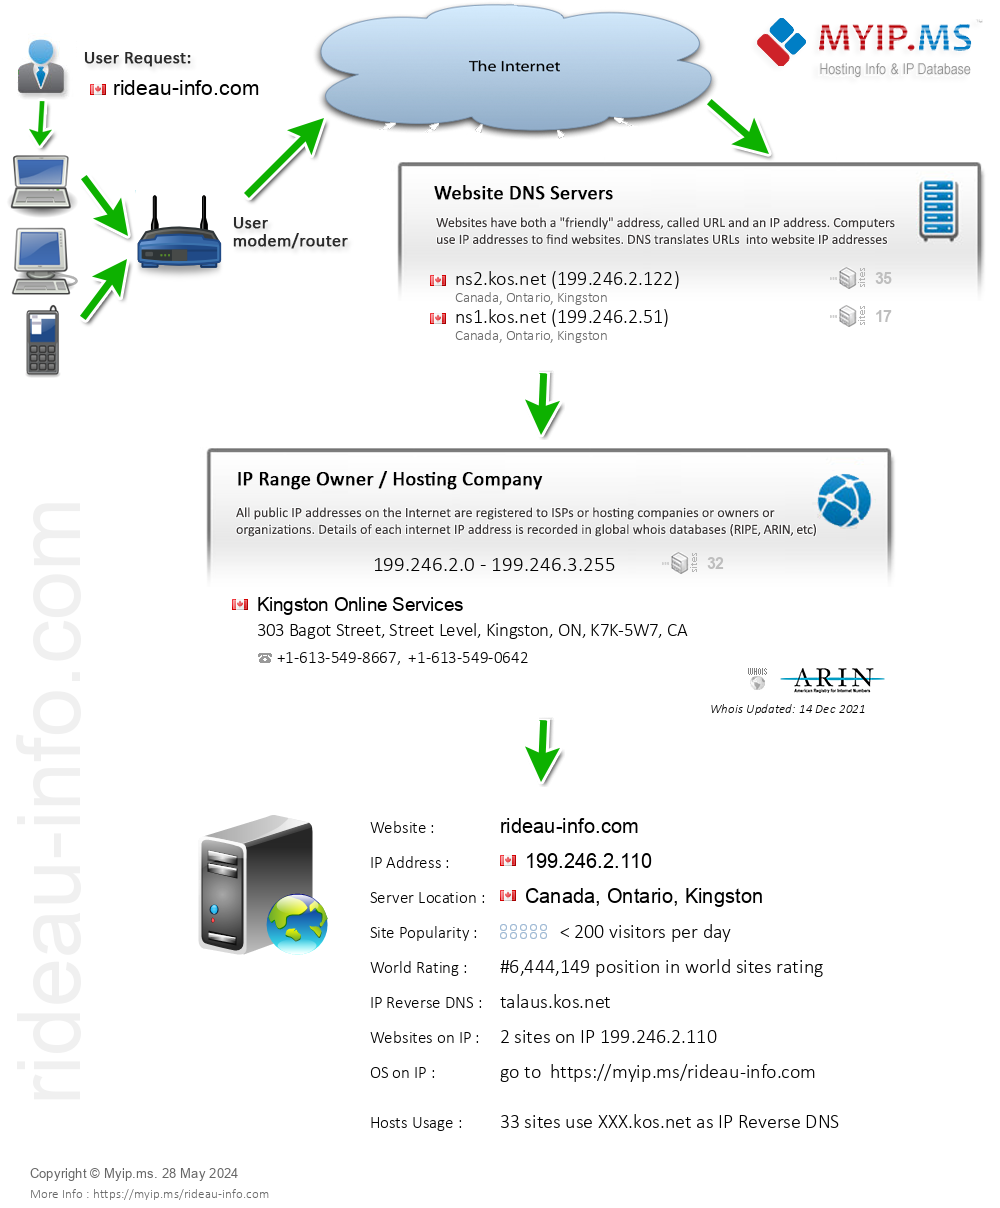 Rideau-info.com - Website Hosting Visual IP Diagram